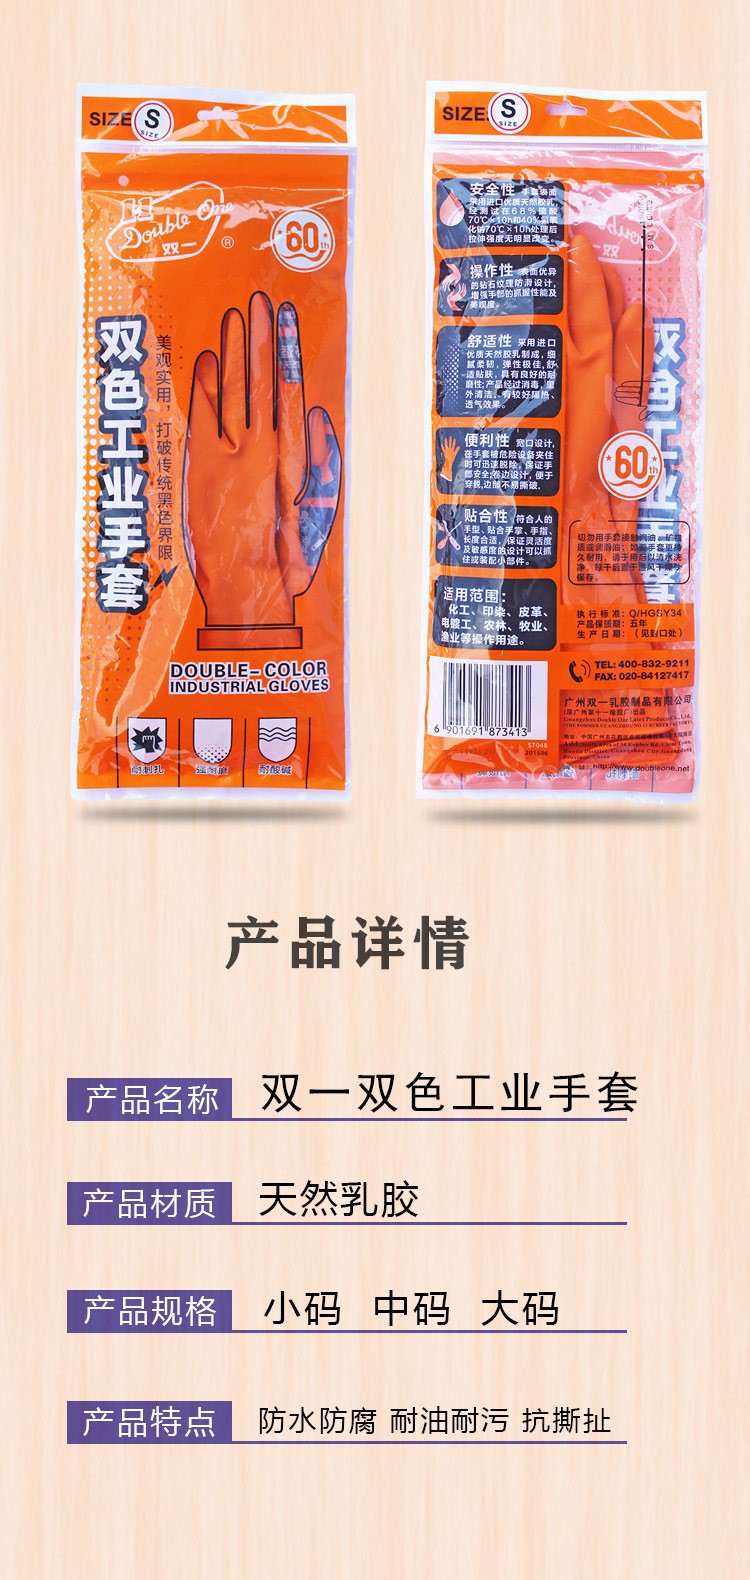 广州双一双色加厚工业乳胶手套耐酸碱手套橘色图片2